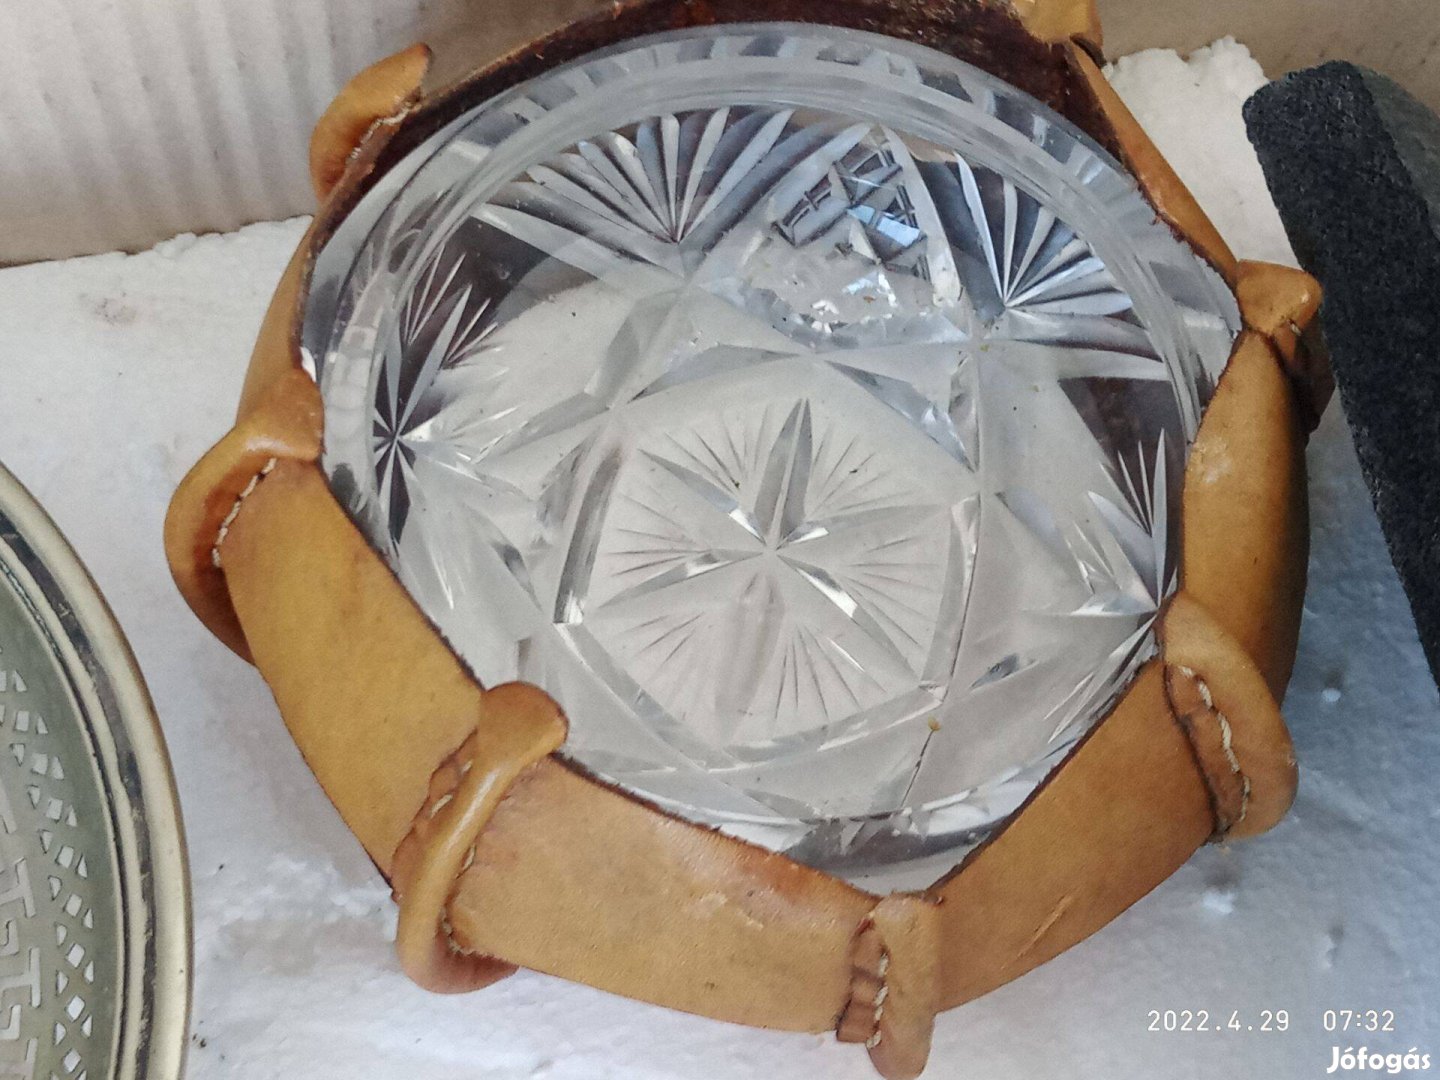 Cukorkatartó kristály üveg bőrvédővel 11cm átmérő 8000ft óbuda